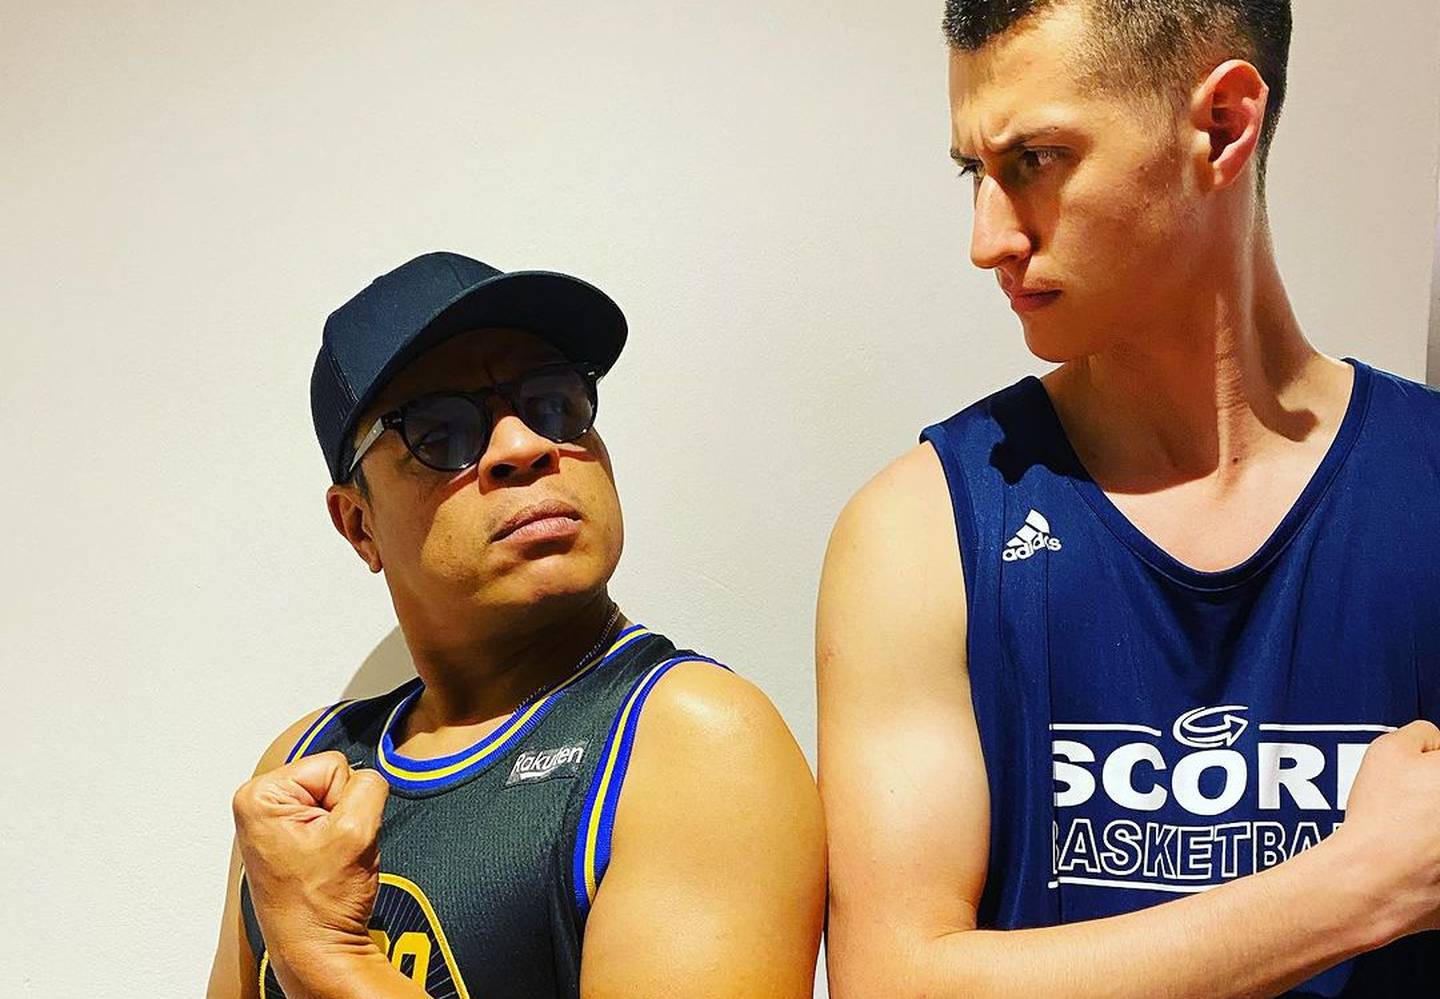 El locutor Jair Cruz y su yerno Esteban Gutiérrez se pusieron un reto de ver quién baja o sube más peso en un mes. Instagram